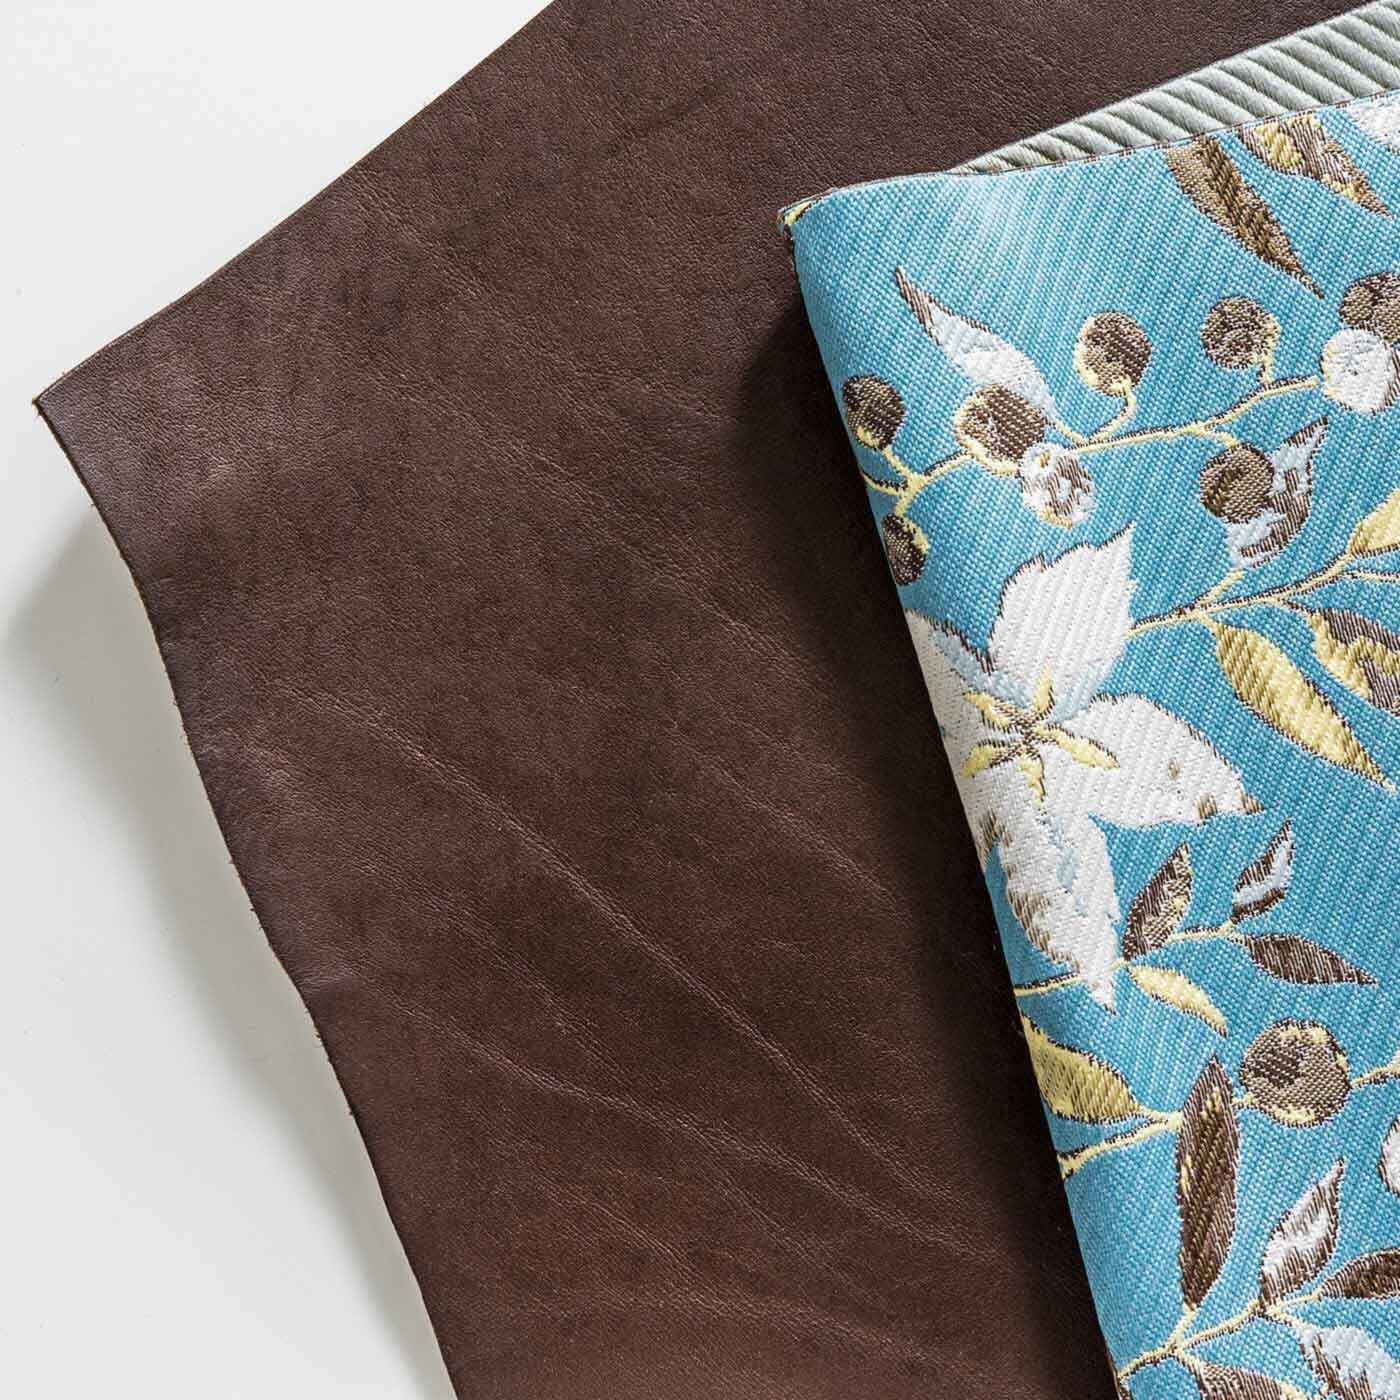 L'AMIPLUS|ラミプリュス　内側じゃばら本革遣い 麗しい草花が織り上げられた ジャカード長財布〈ターコイズブルー〉|内側じゃばら部分などにはオイルをたっぷり含んだ本革を使用。革らしい自然な表情が魅力のチョコ色です。